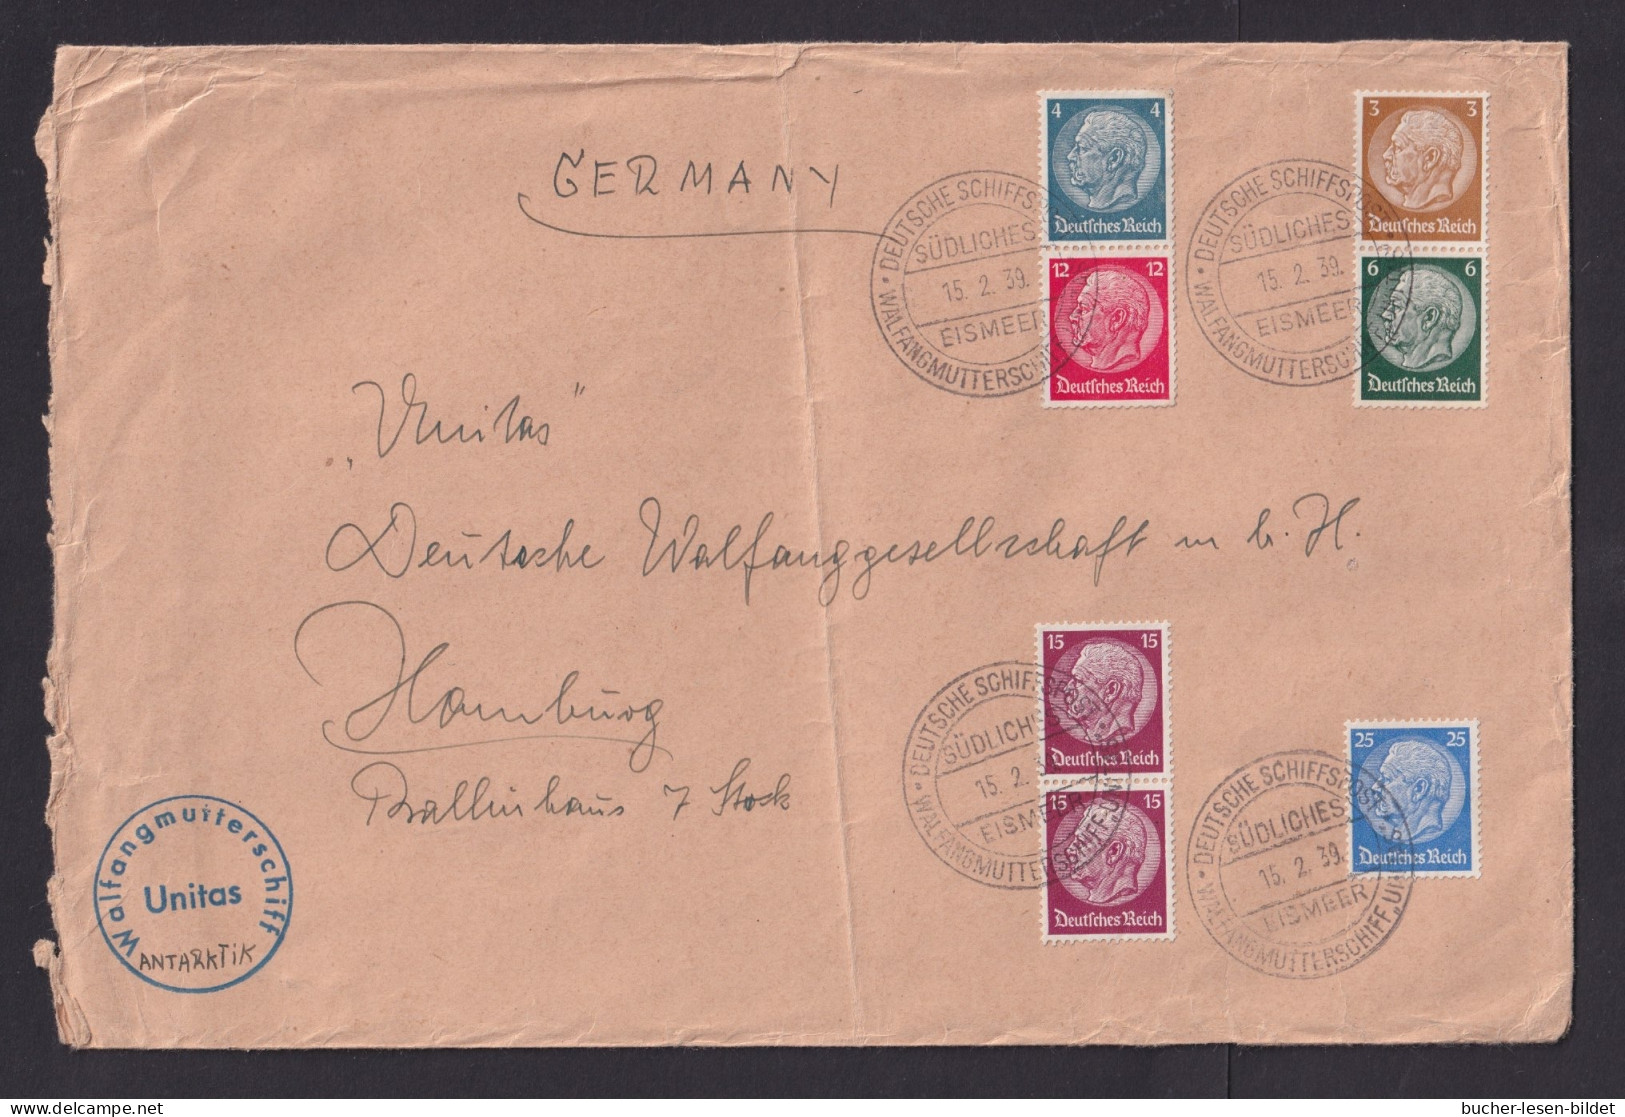 1939 - Bedarfsbrief Mit Schiffstempel "Walfangflotte Südliches Eismeer Unitas" - SEHR  SELTEN - Walvissen